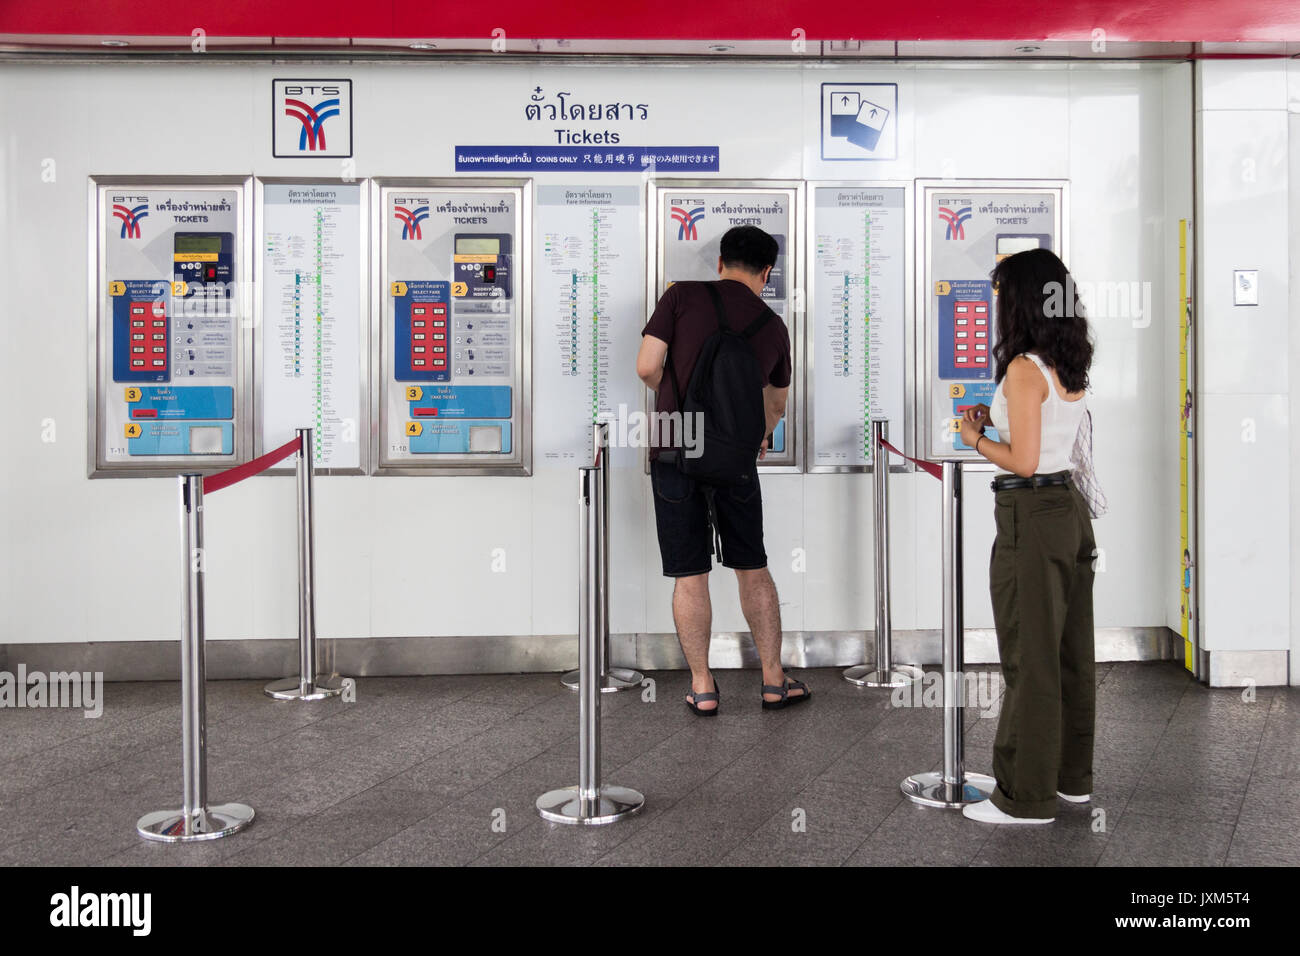 L'homme et la femme se des billets à partir de la machine de billets à la station de BTS Skytrain Asoke, Bangkok, Thaïlande Banque D'Images